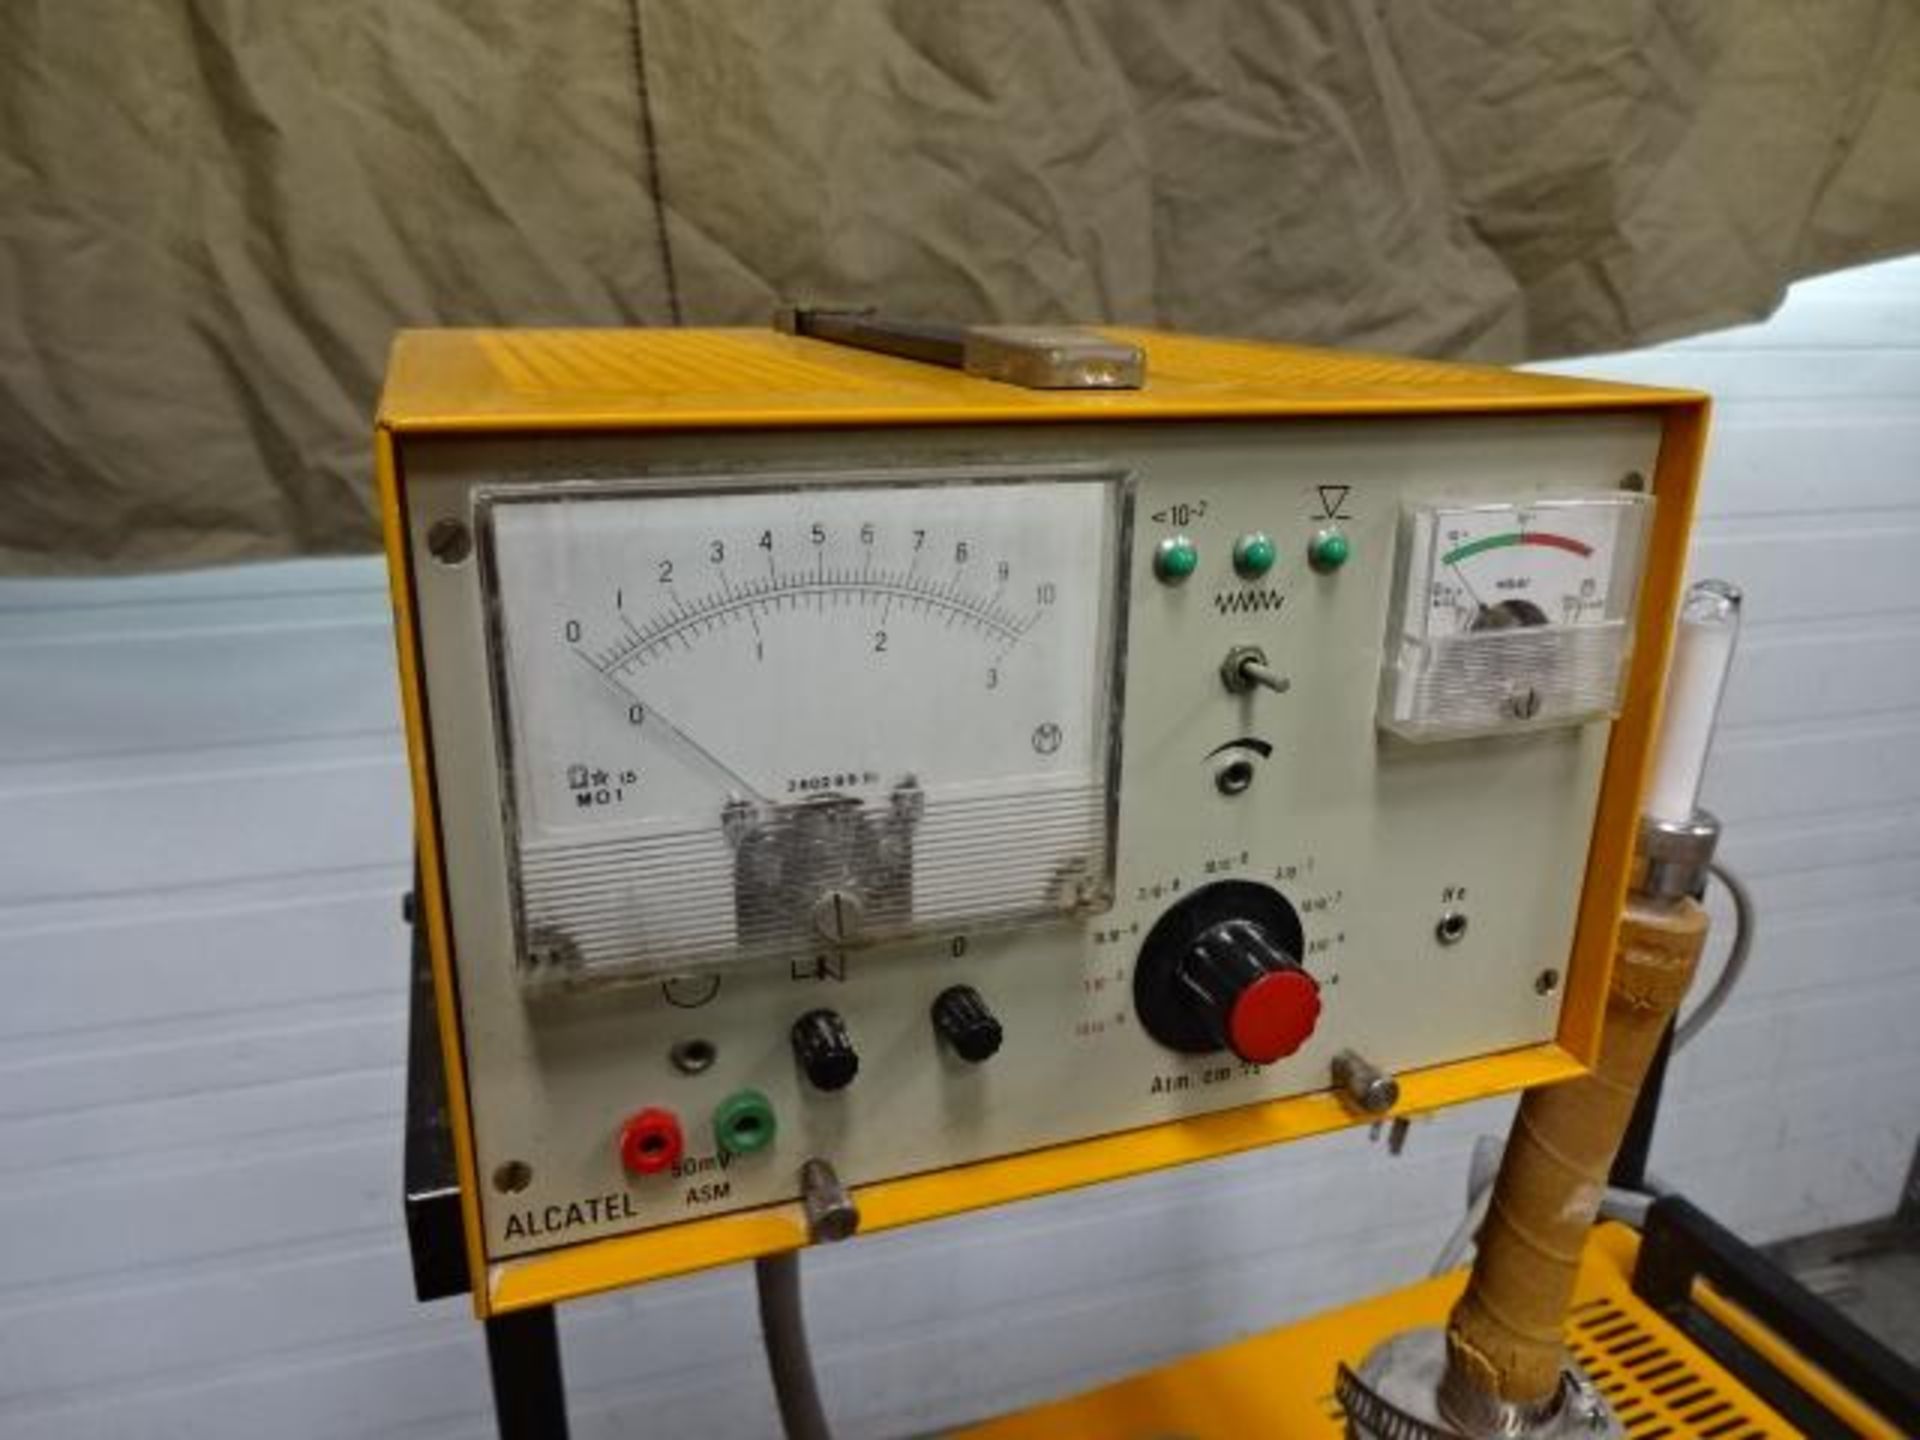 Alcatel asm-10 diffusion pump helium leak detector - Bild 3 aus 7